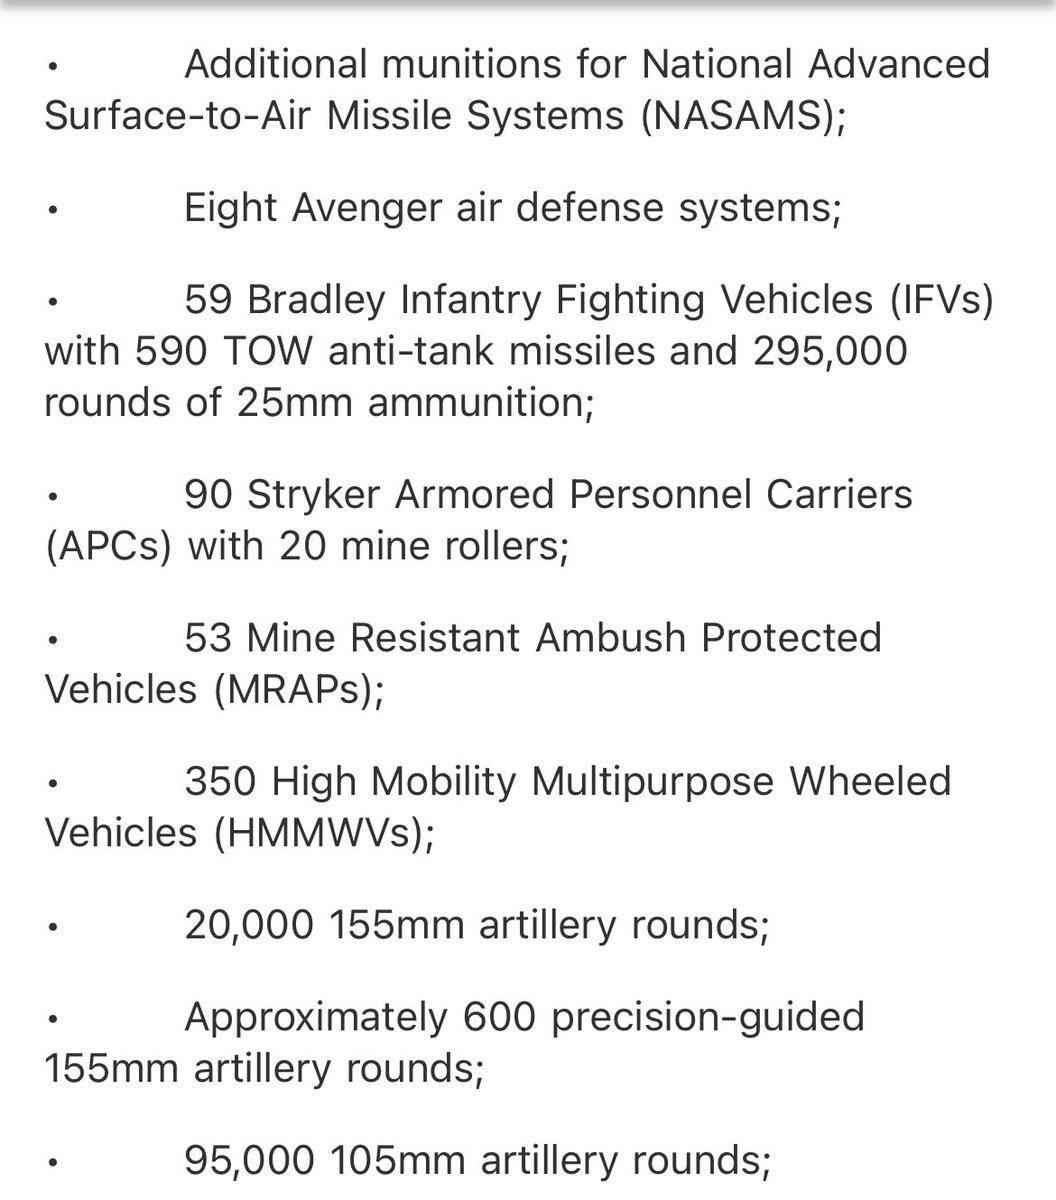 Das neue Militärhilfepaket in Höhe von 2,5 Milliarden US-Dollar für die Ukraine enthält erstmals 90 Stryker APCs. 59 weitere Bradley-Kampffahrzeuge. (50 zuvor.) Aber keine Panzer. Bringt der Ukraine seit Beginn der Biden-Administration Sicherheitshilfe in Höhe von insgesamt 27,4 Milliarden US-Dollar ein